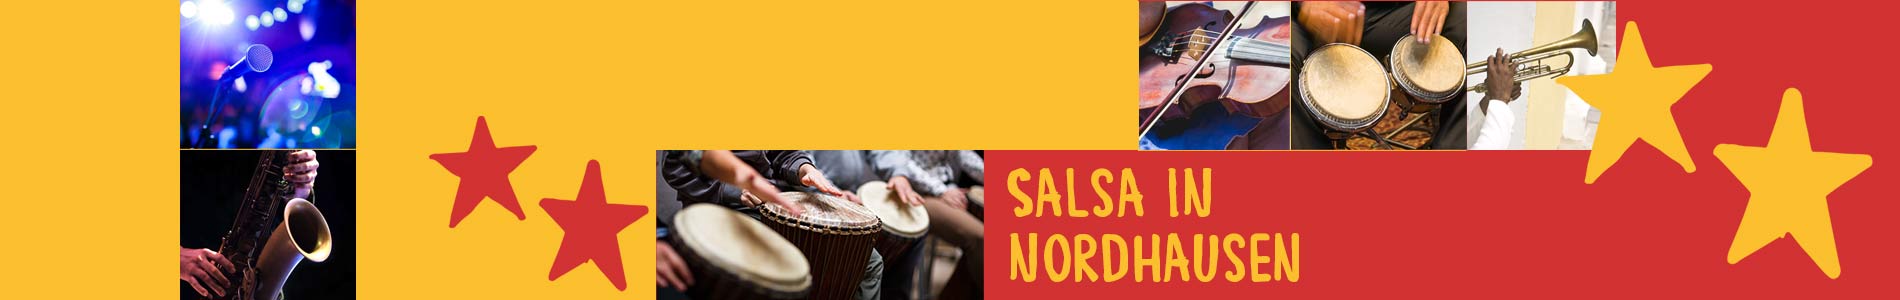 Salsa in Nordhausen – Salsa lernen und tanzen, Tanzkurse, Partys, Veranstaltungen